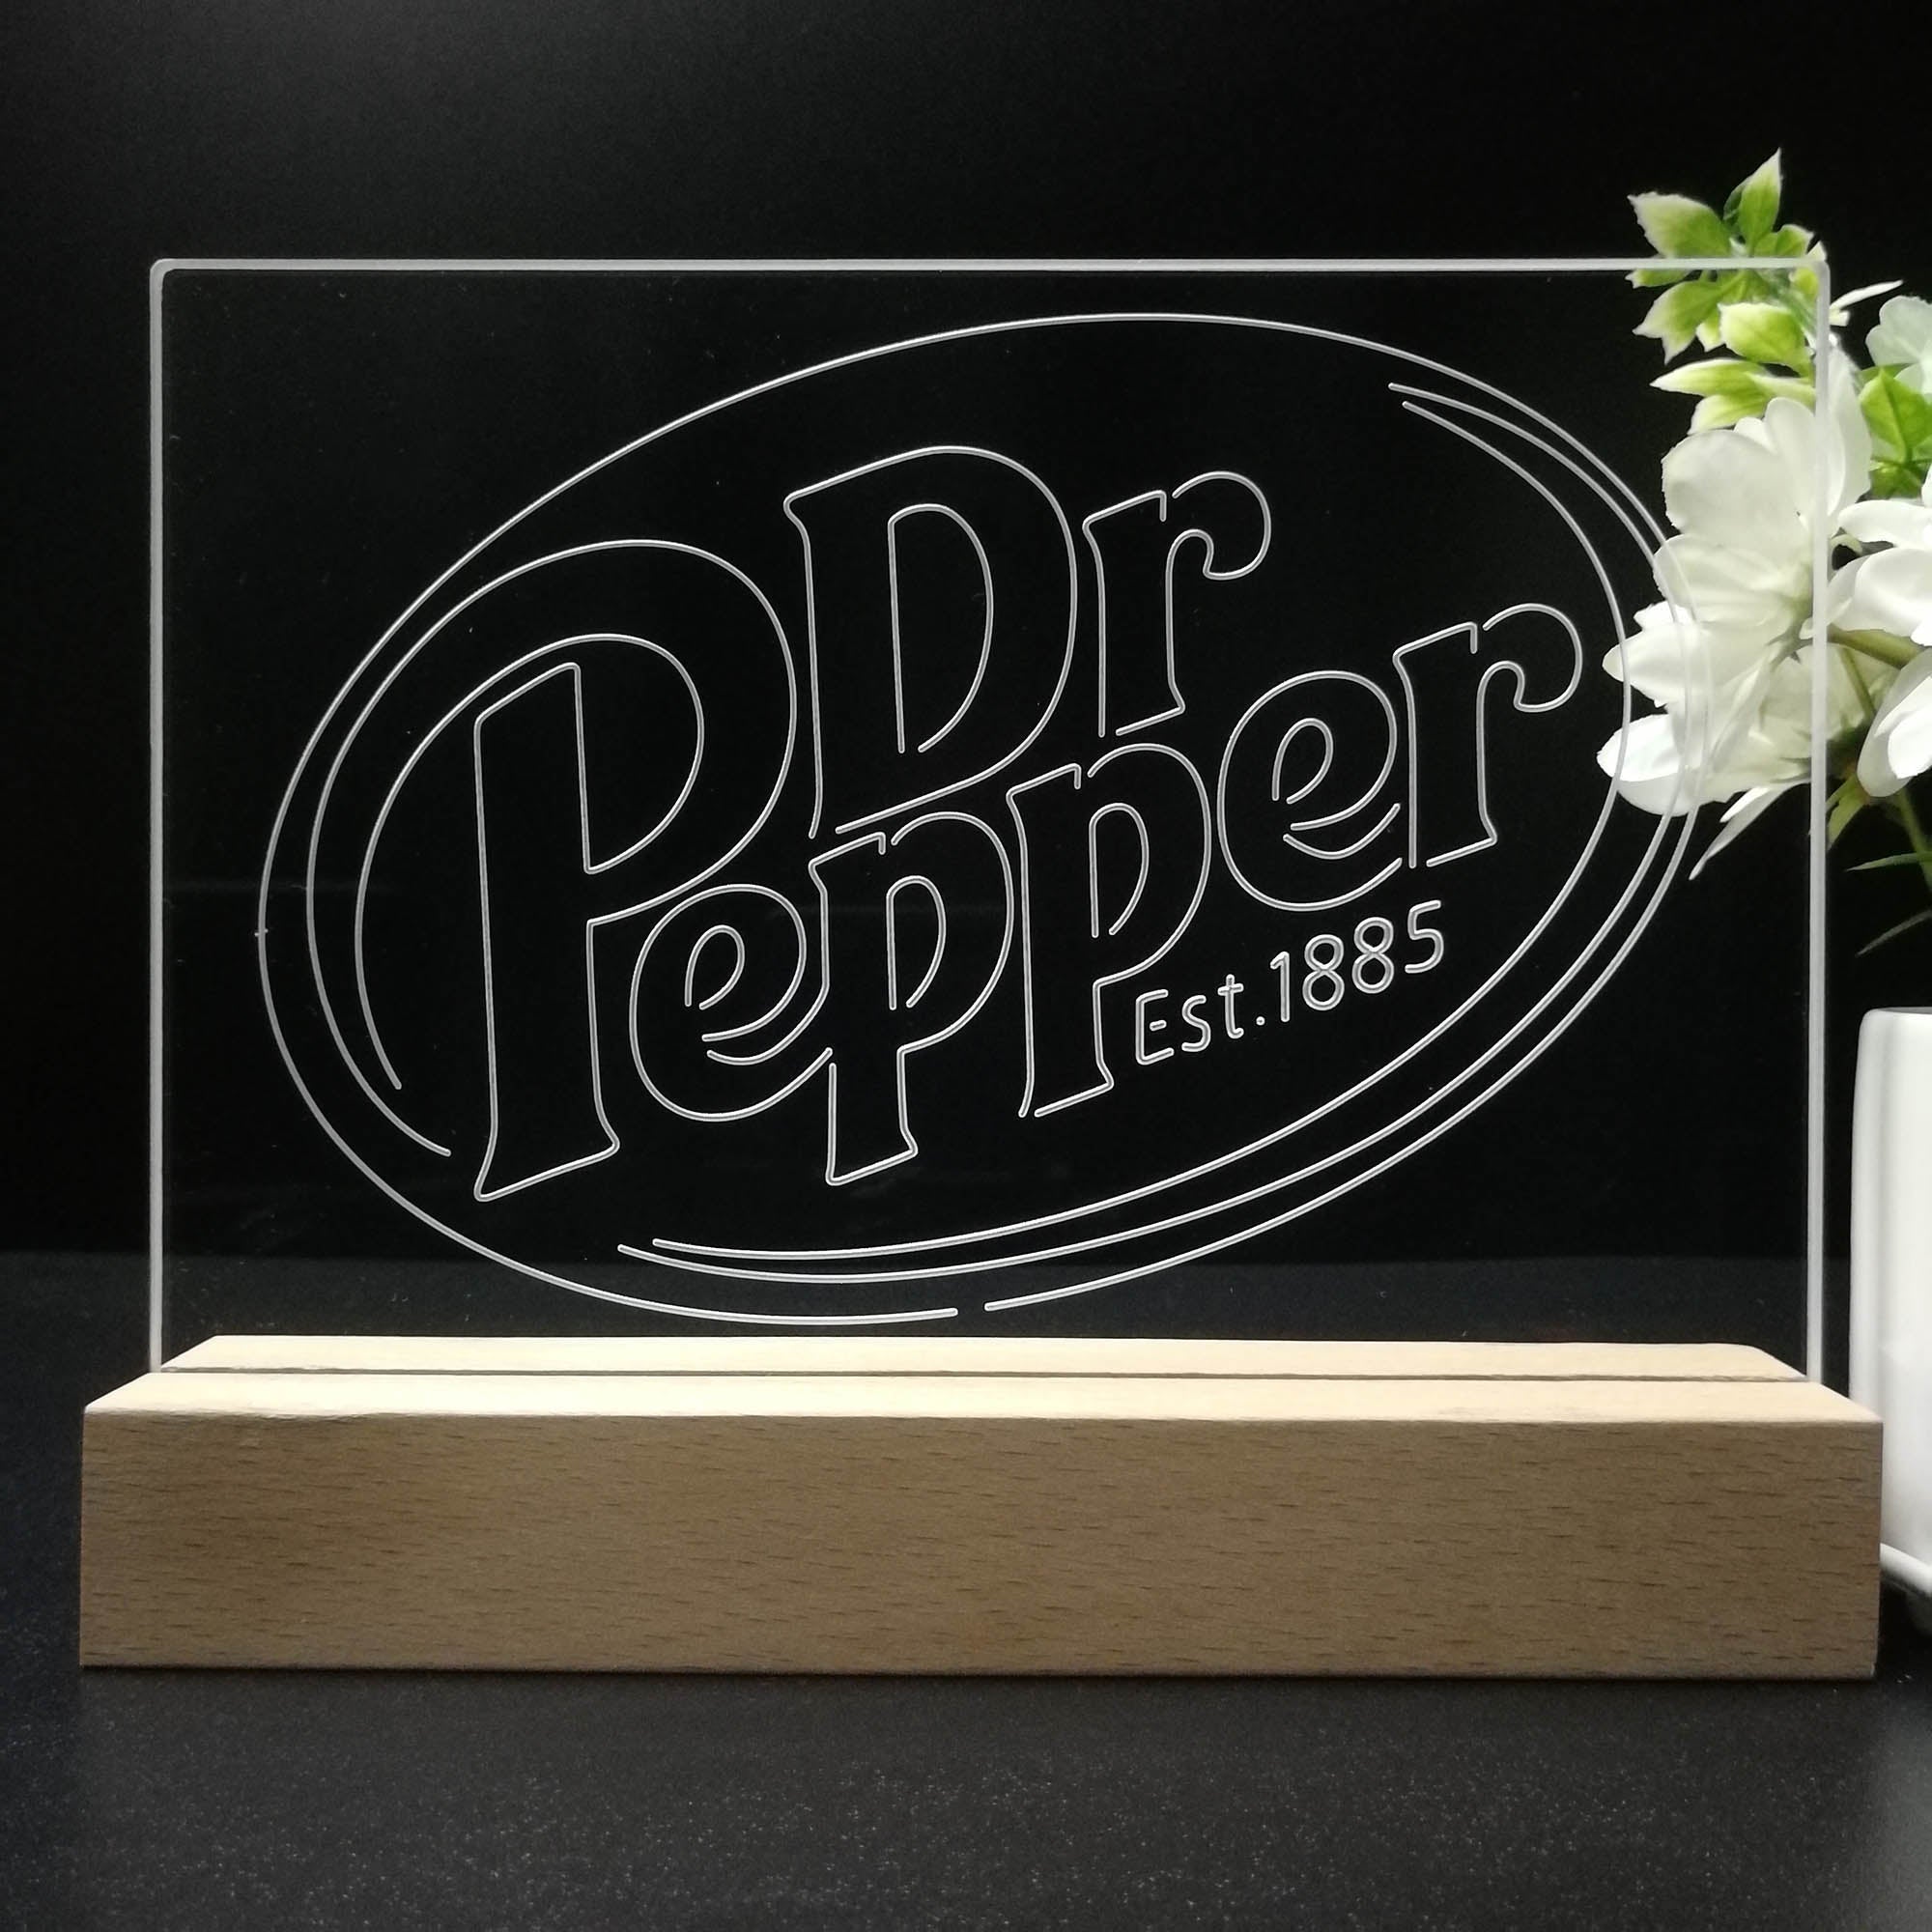 Dr Pepper Est 1885 Neon Sign Pub Bar Decor Lamp